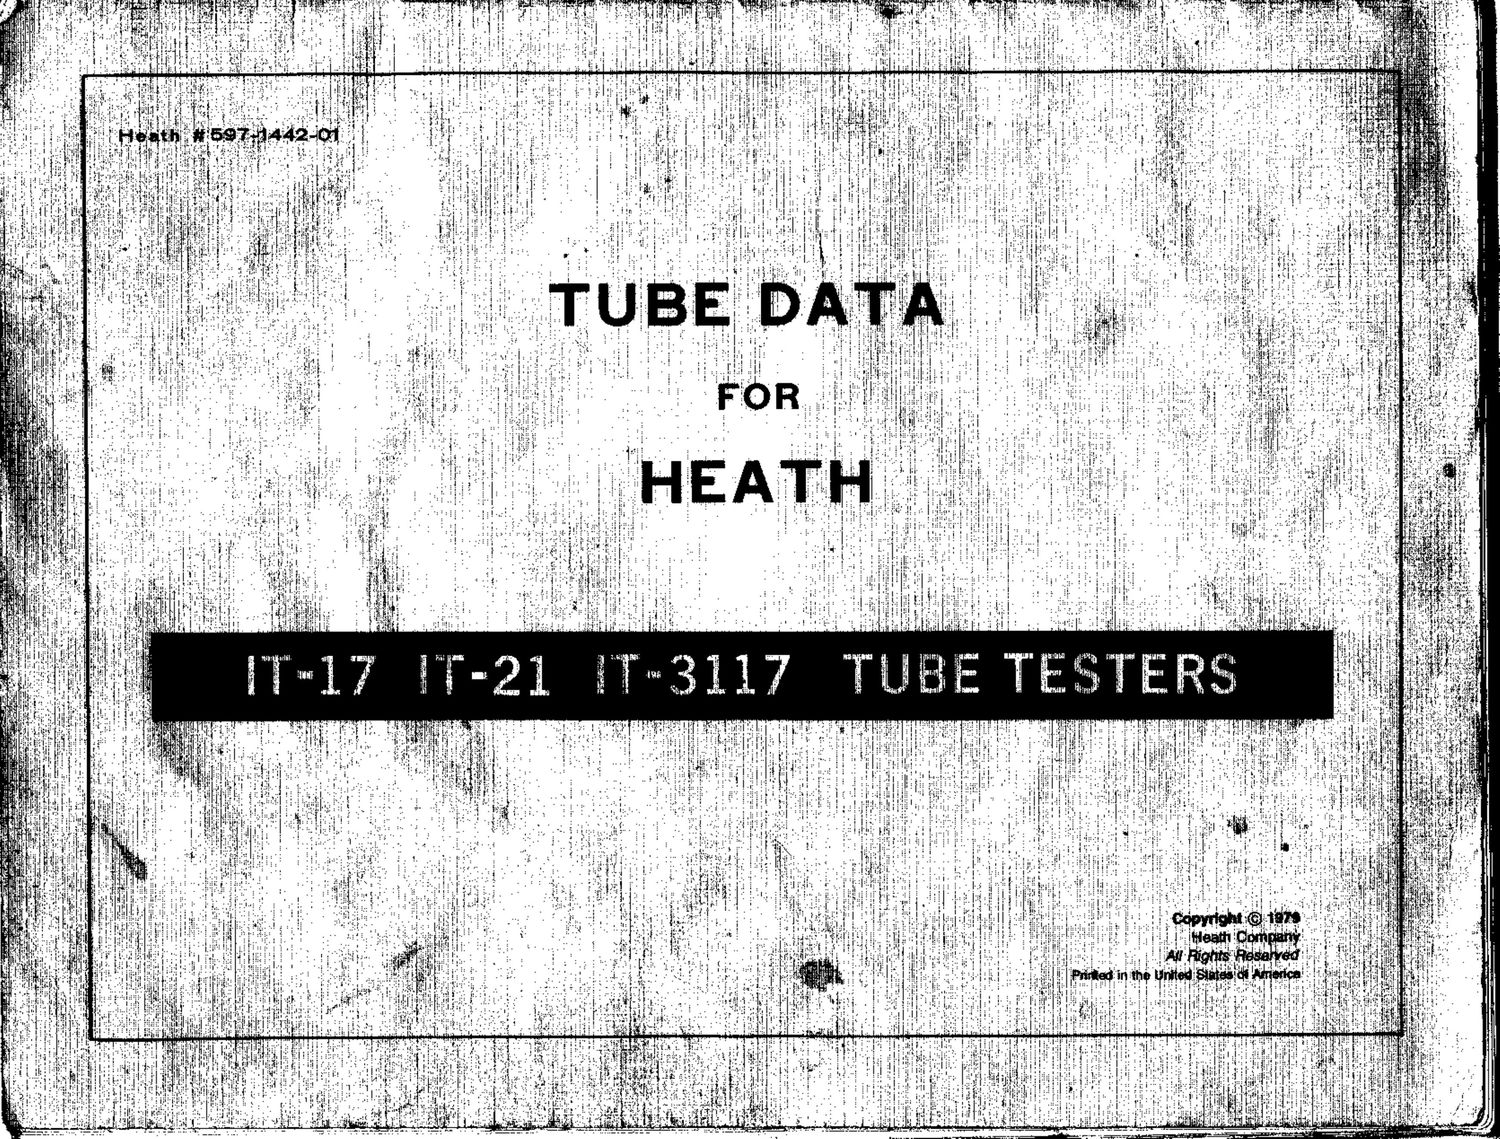 Heathkit Tube Data